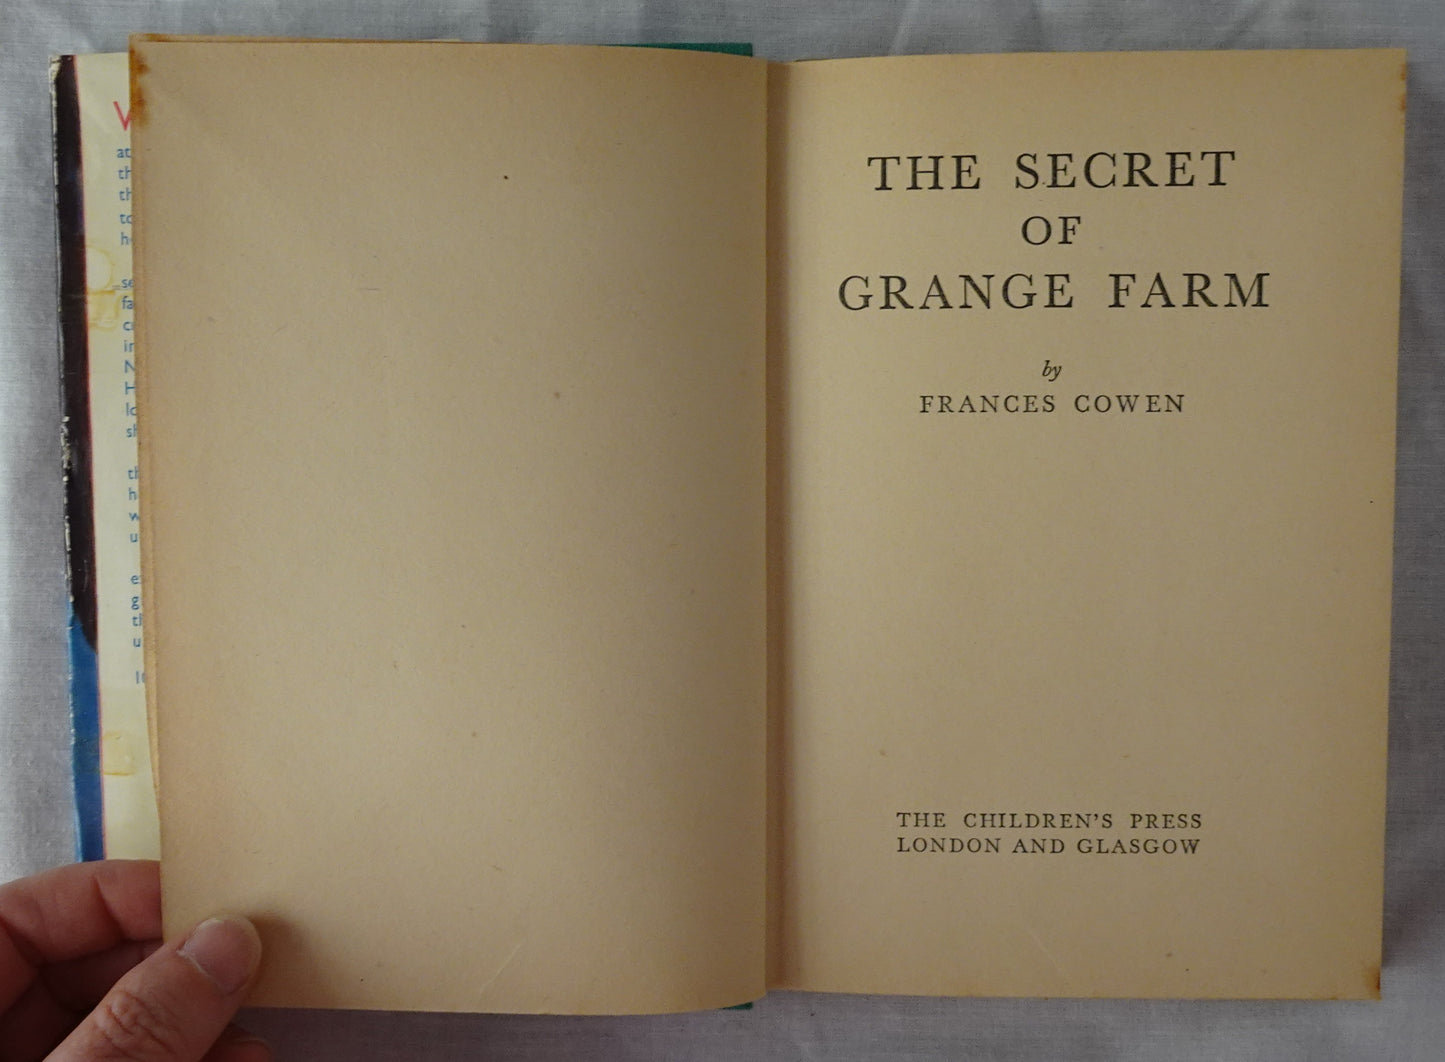 The Secret of Grange Farm by Frances Cowen